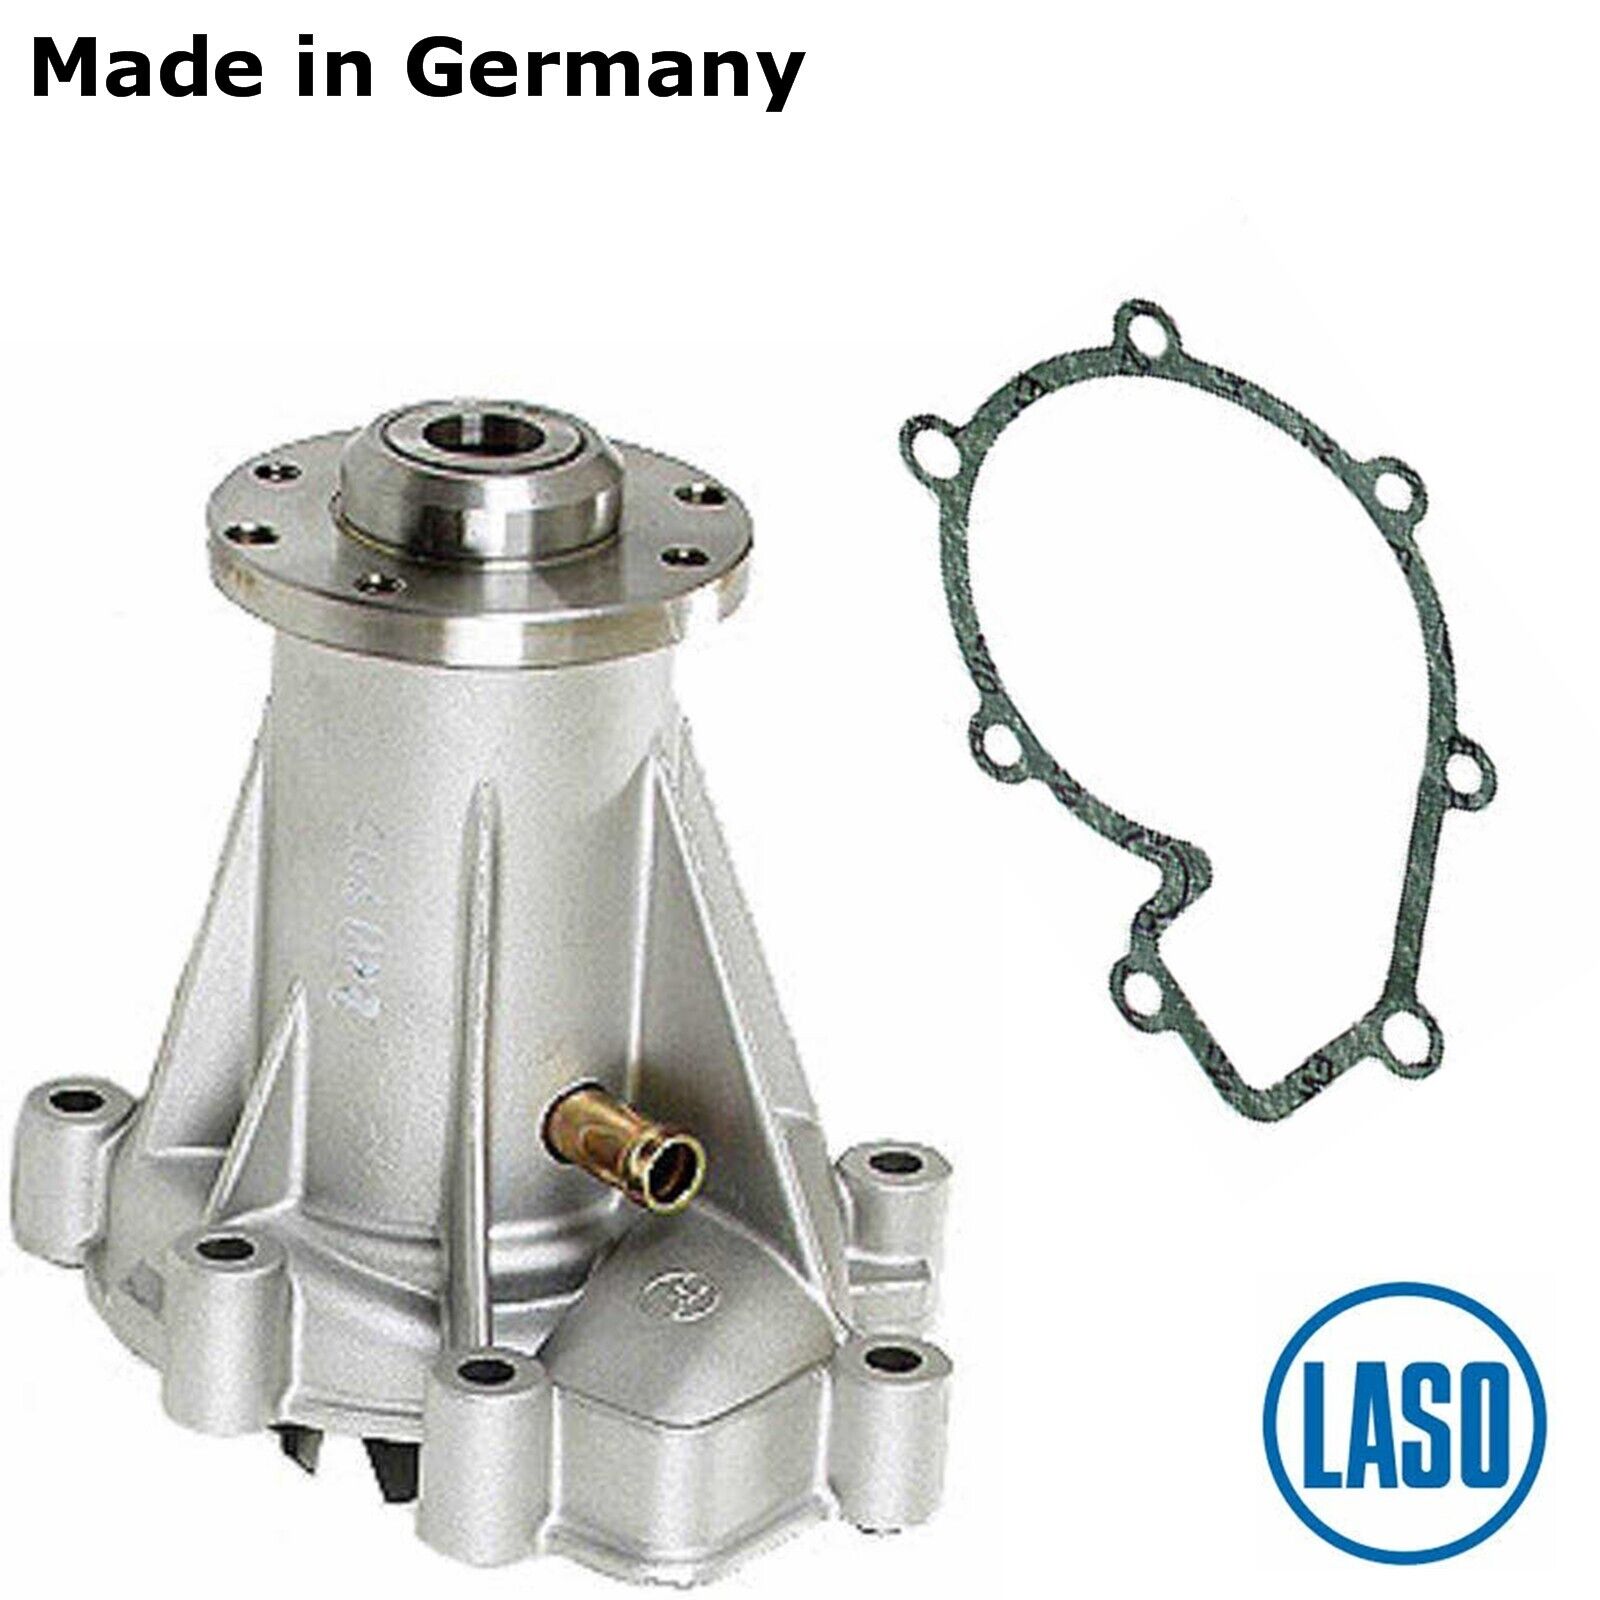 Premium German Laso Water Pump 1998-99 Mercedes E300 Turbo Diesel 605 200 08 20